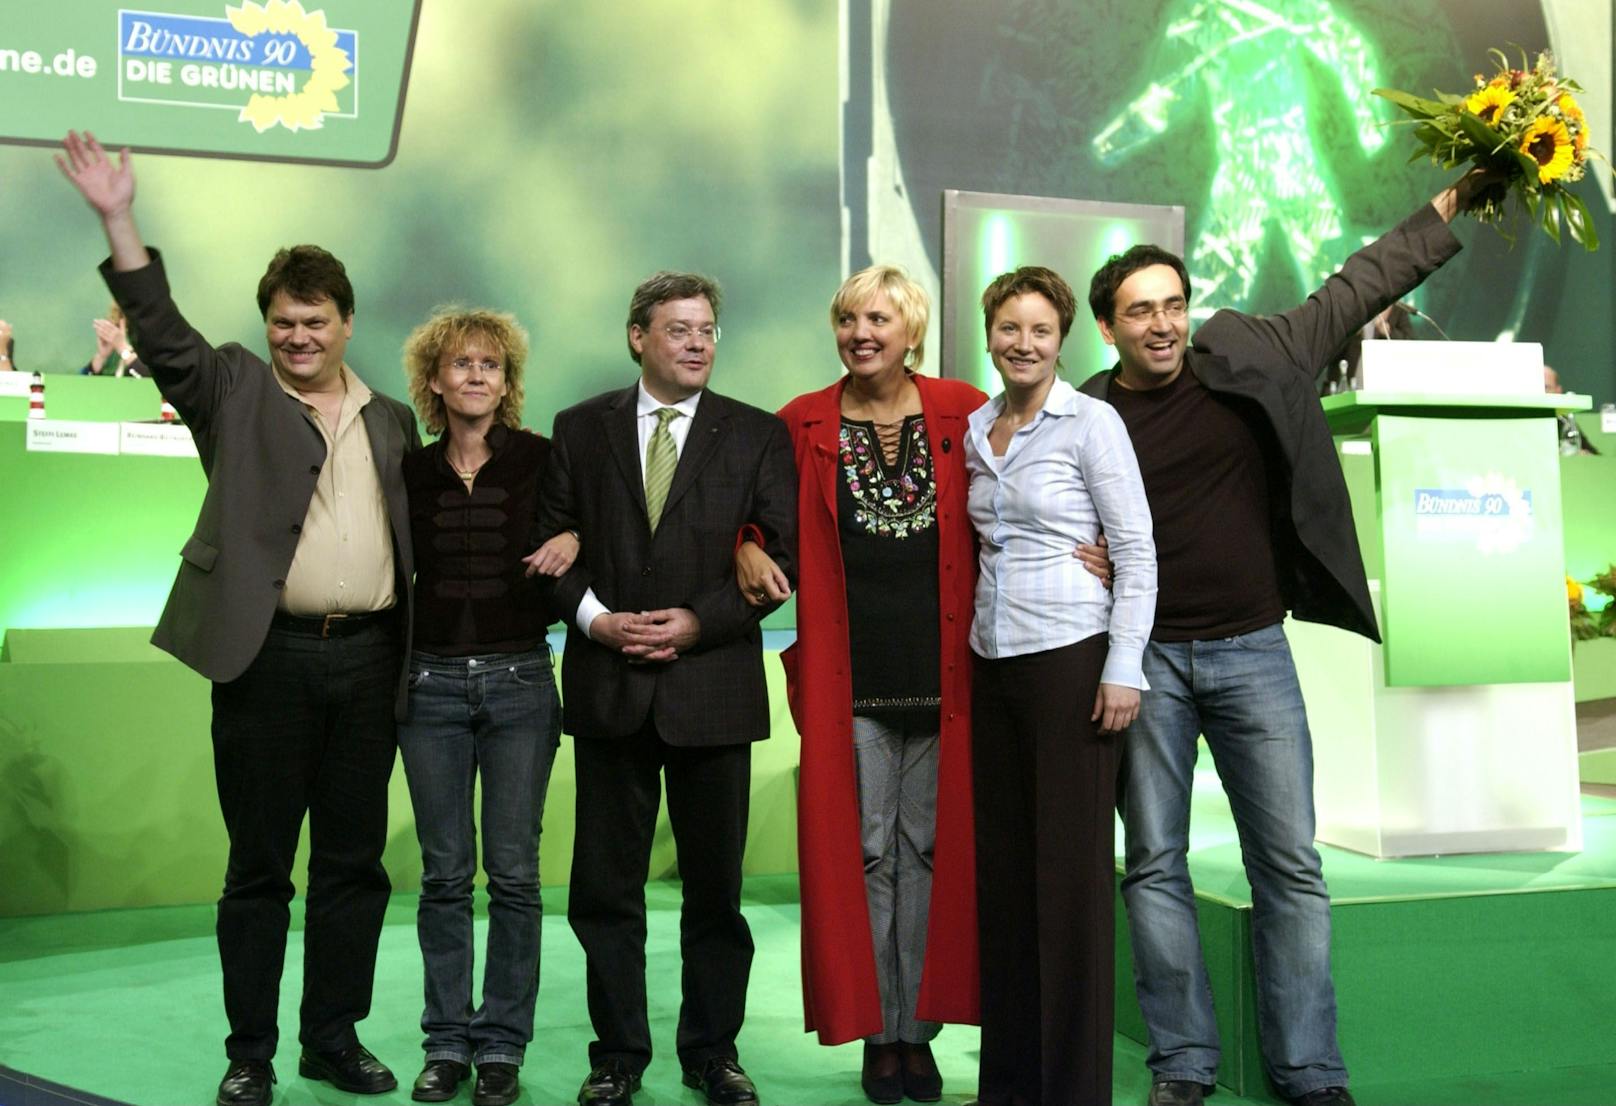 02.10.2004: Der frisch gewählte Bundesvorstand der deutschen Grünen. Mit dabei auch Katja Husen (2.v.r.)